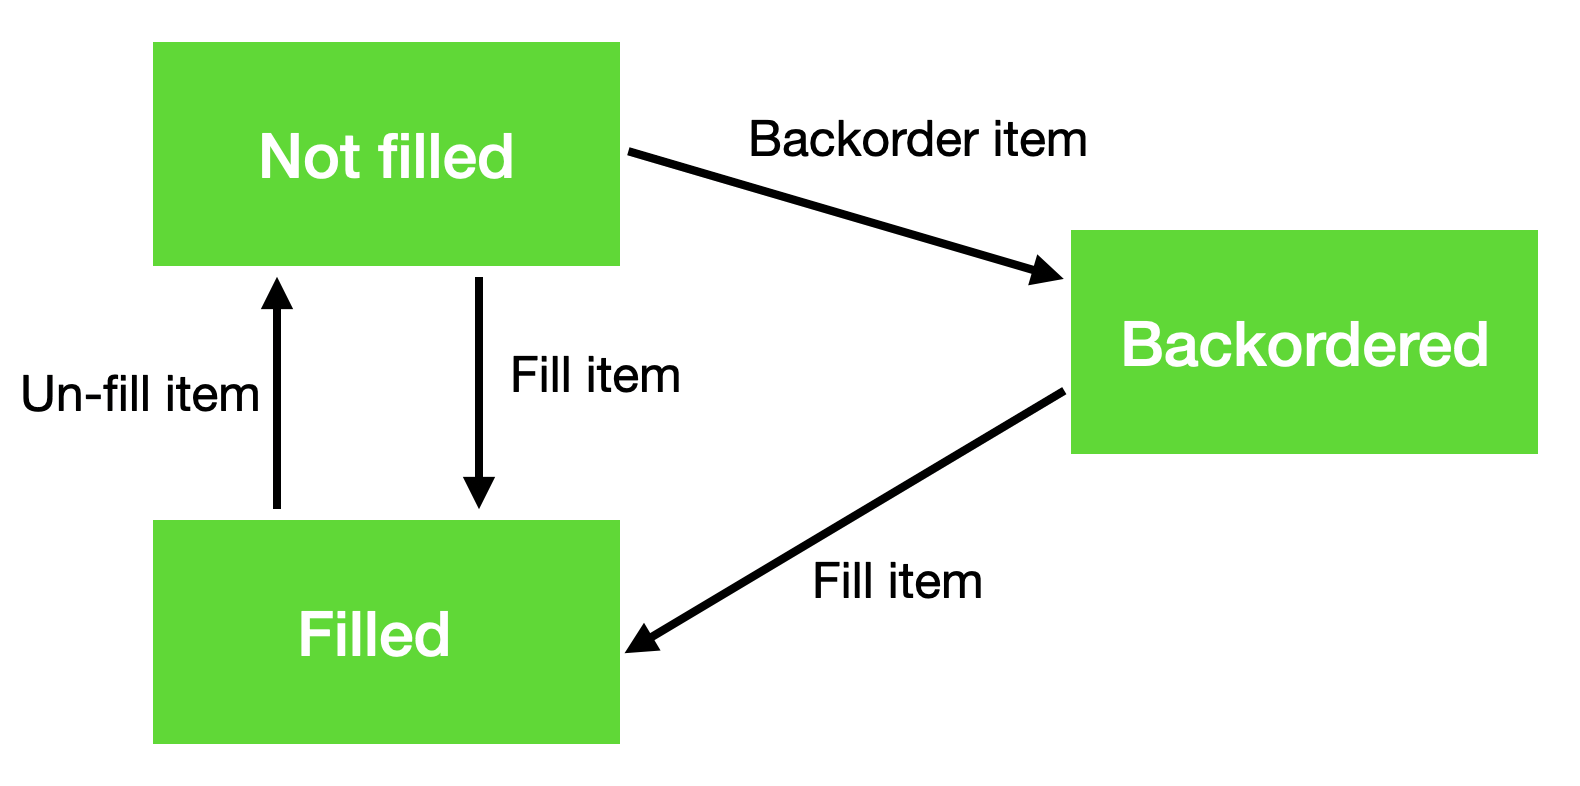 Order item fulfillment workflow diagram